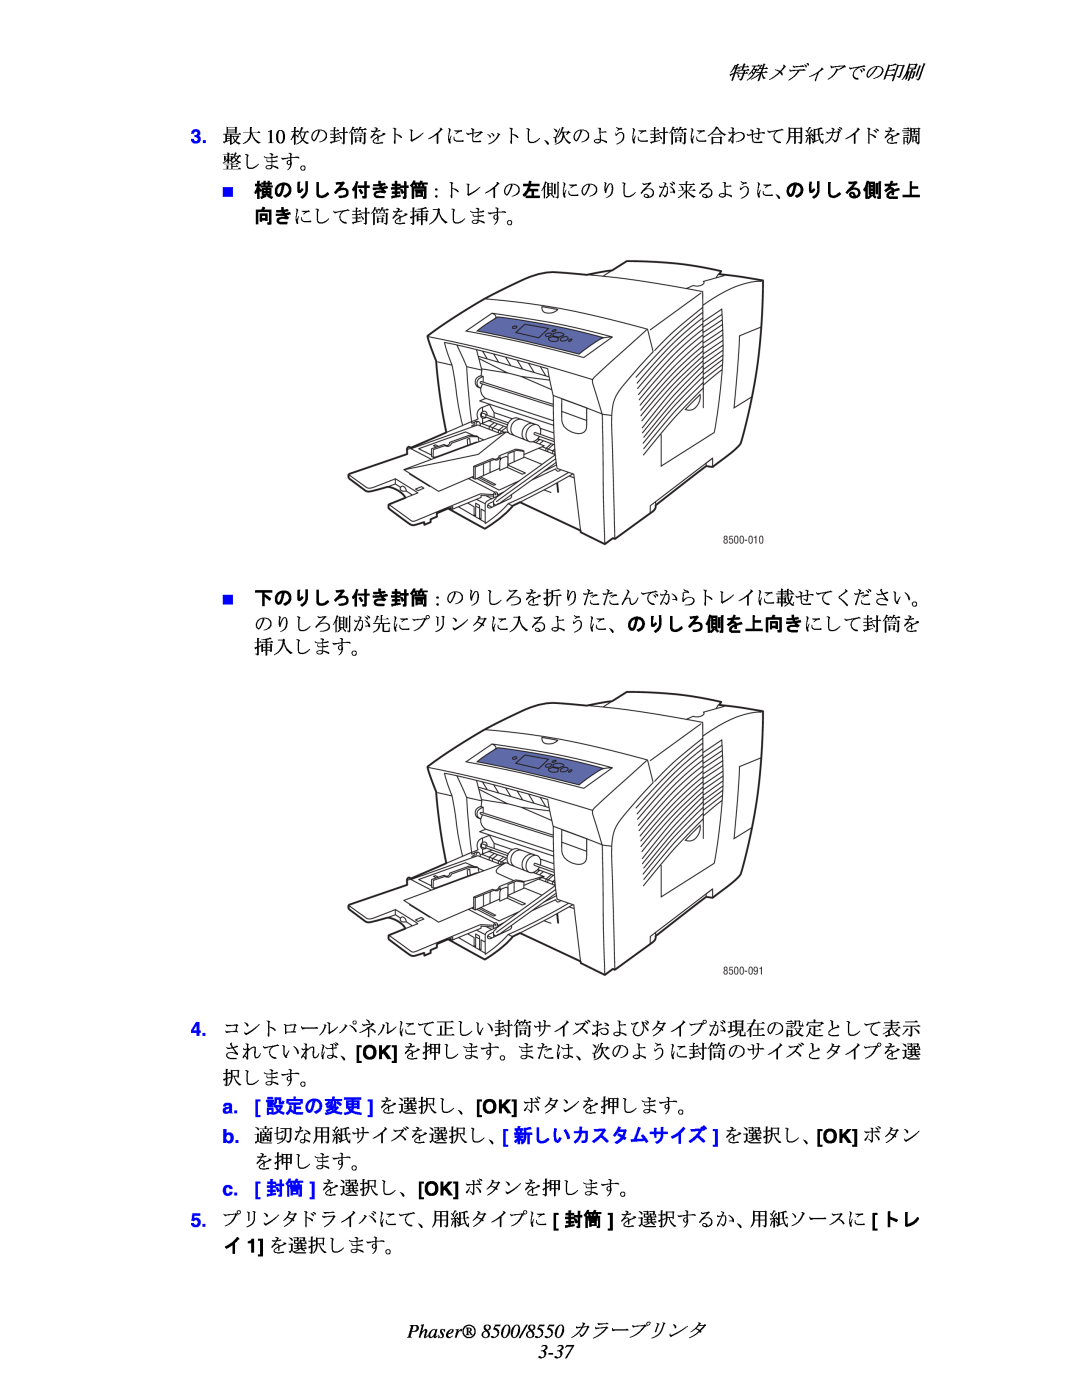 Xerox manual 特殊メデ ィ アでの印刷, Phaser 8500/8550 カ ラープ リ ン タ 3-37 